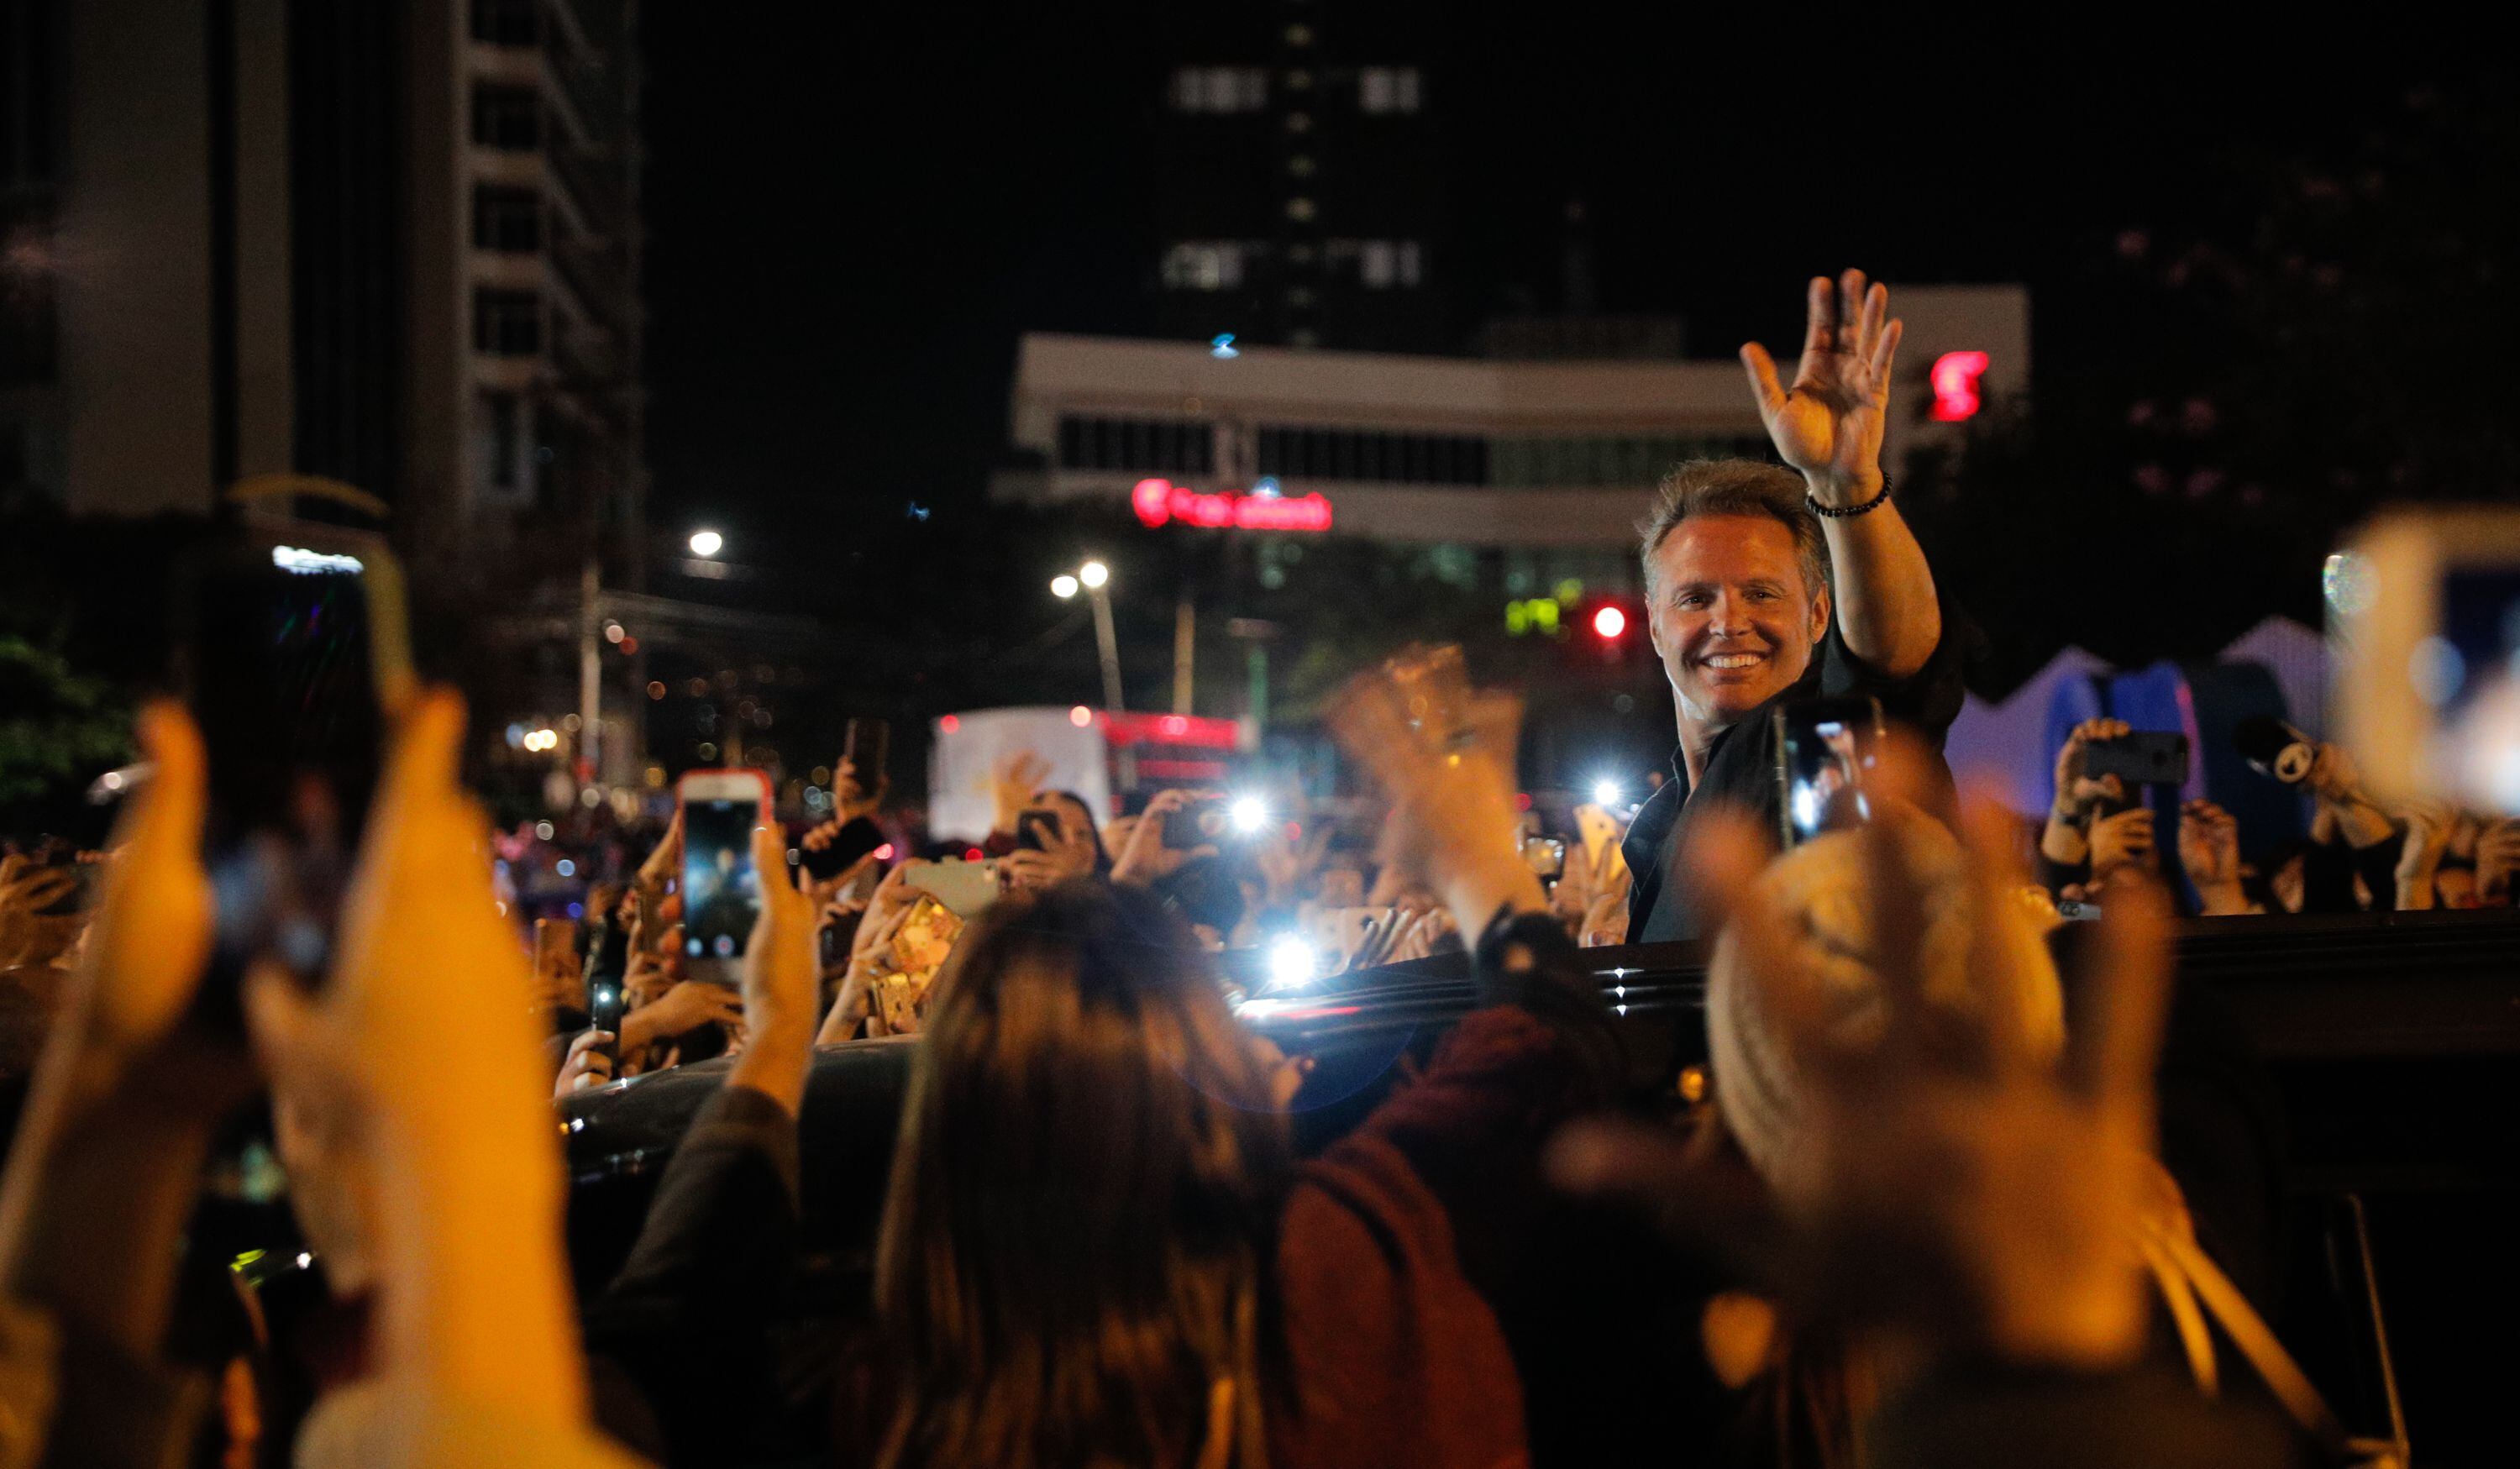 Saliendo del estadio, Luis Miguel saludó a los fans desde el carro que lo transportaba, en su último concierto que dio en Costa Rica.

